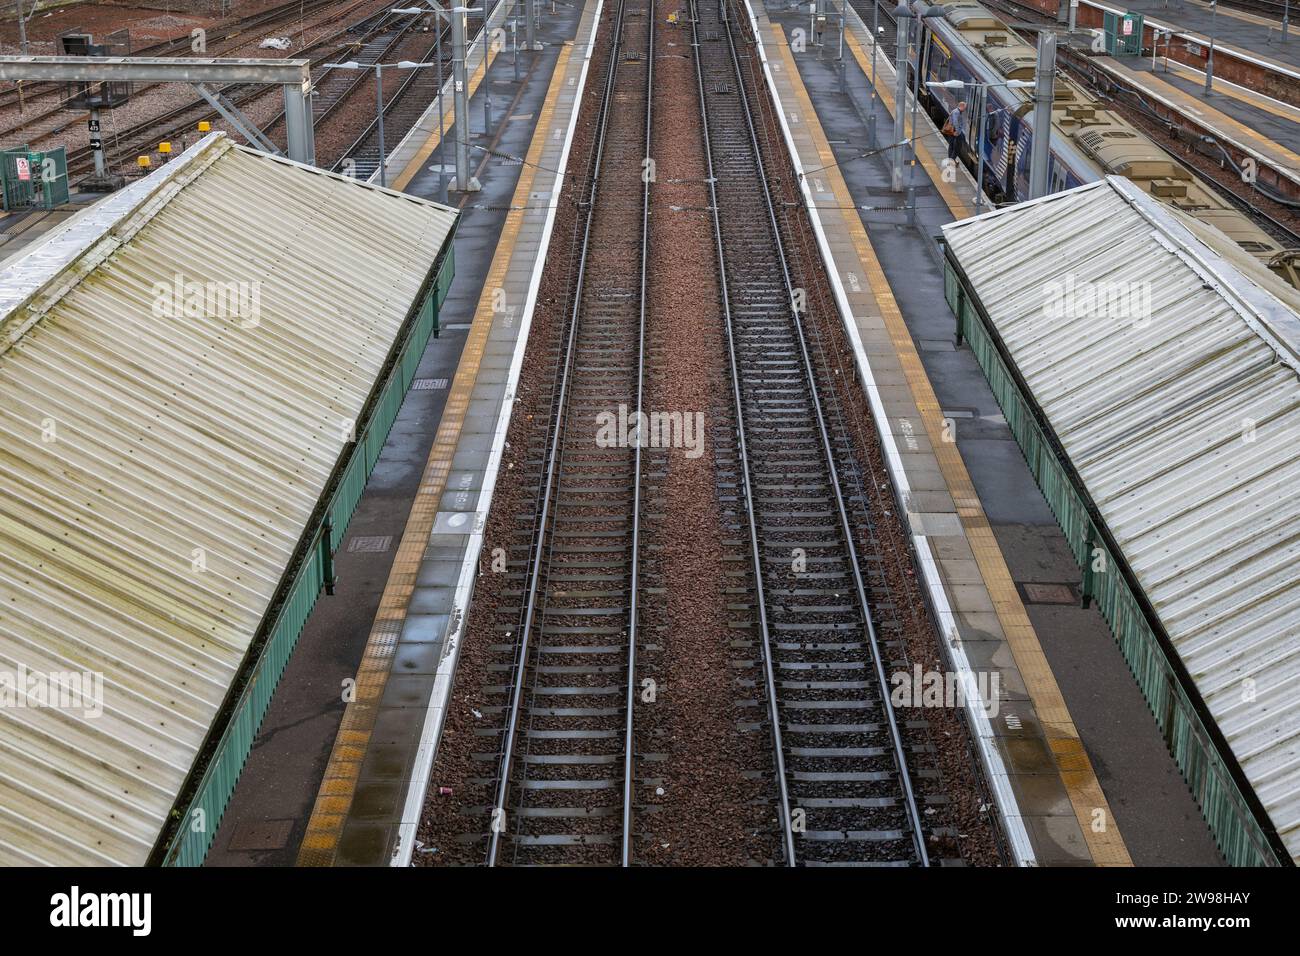 Bahnsteige und Gleise des Hauptbahnhofs Edinburgh Waverley, städtische Infrastruktur in Edinburgh in Schottland, Großbritannien. Stockfoto